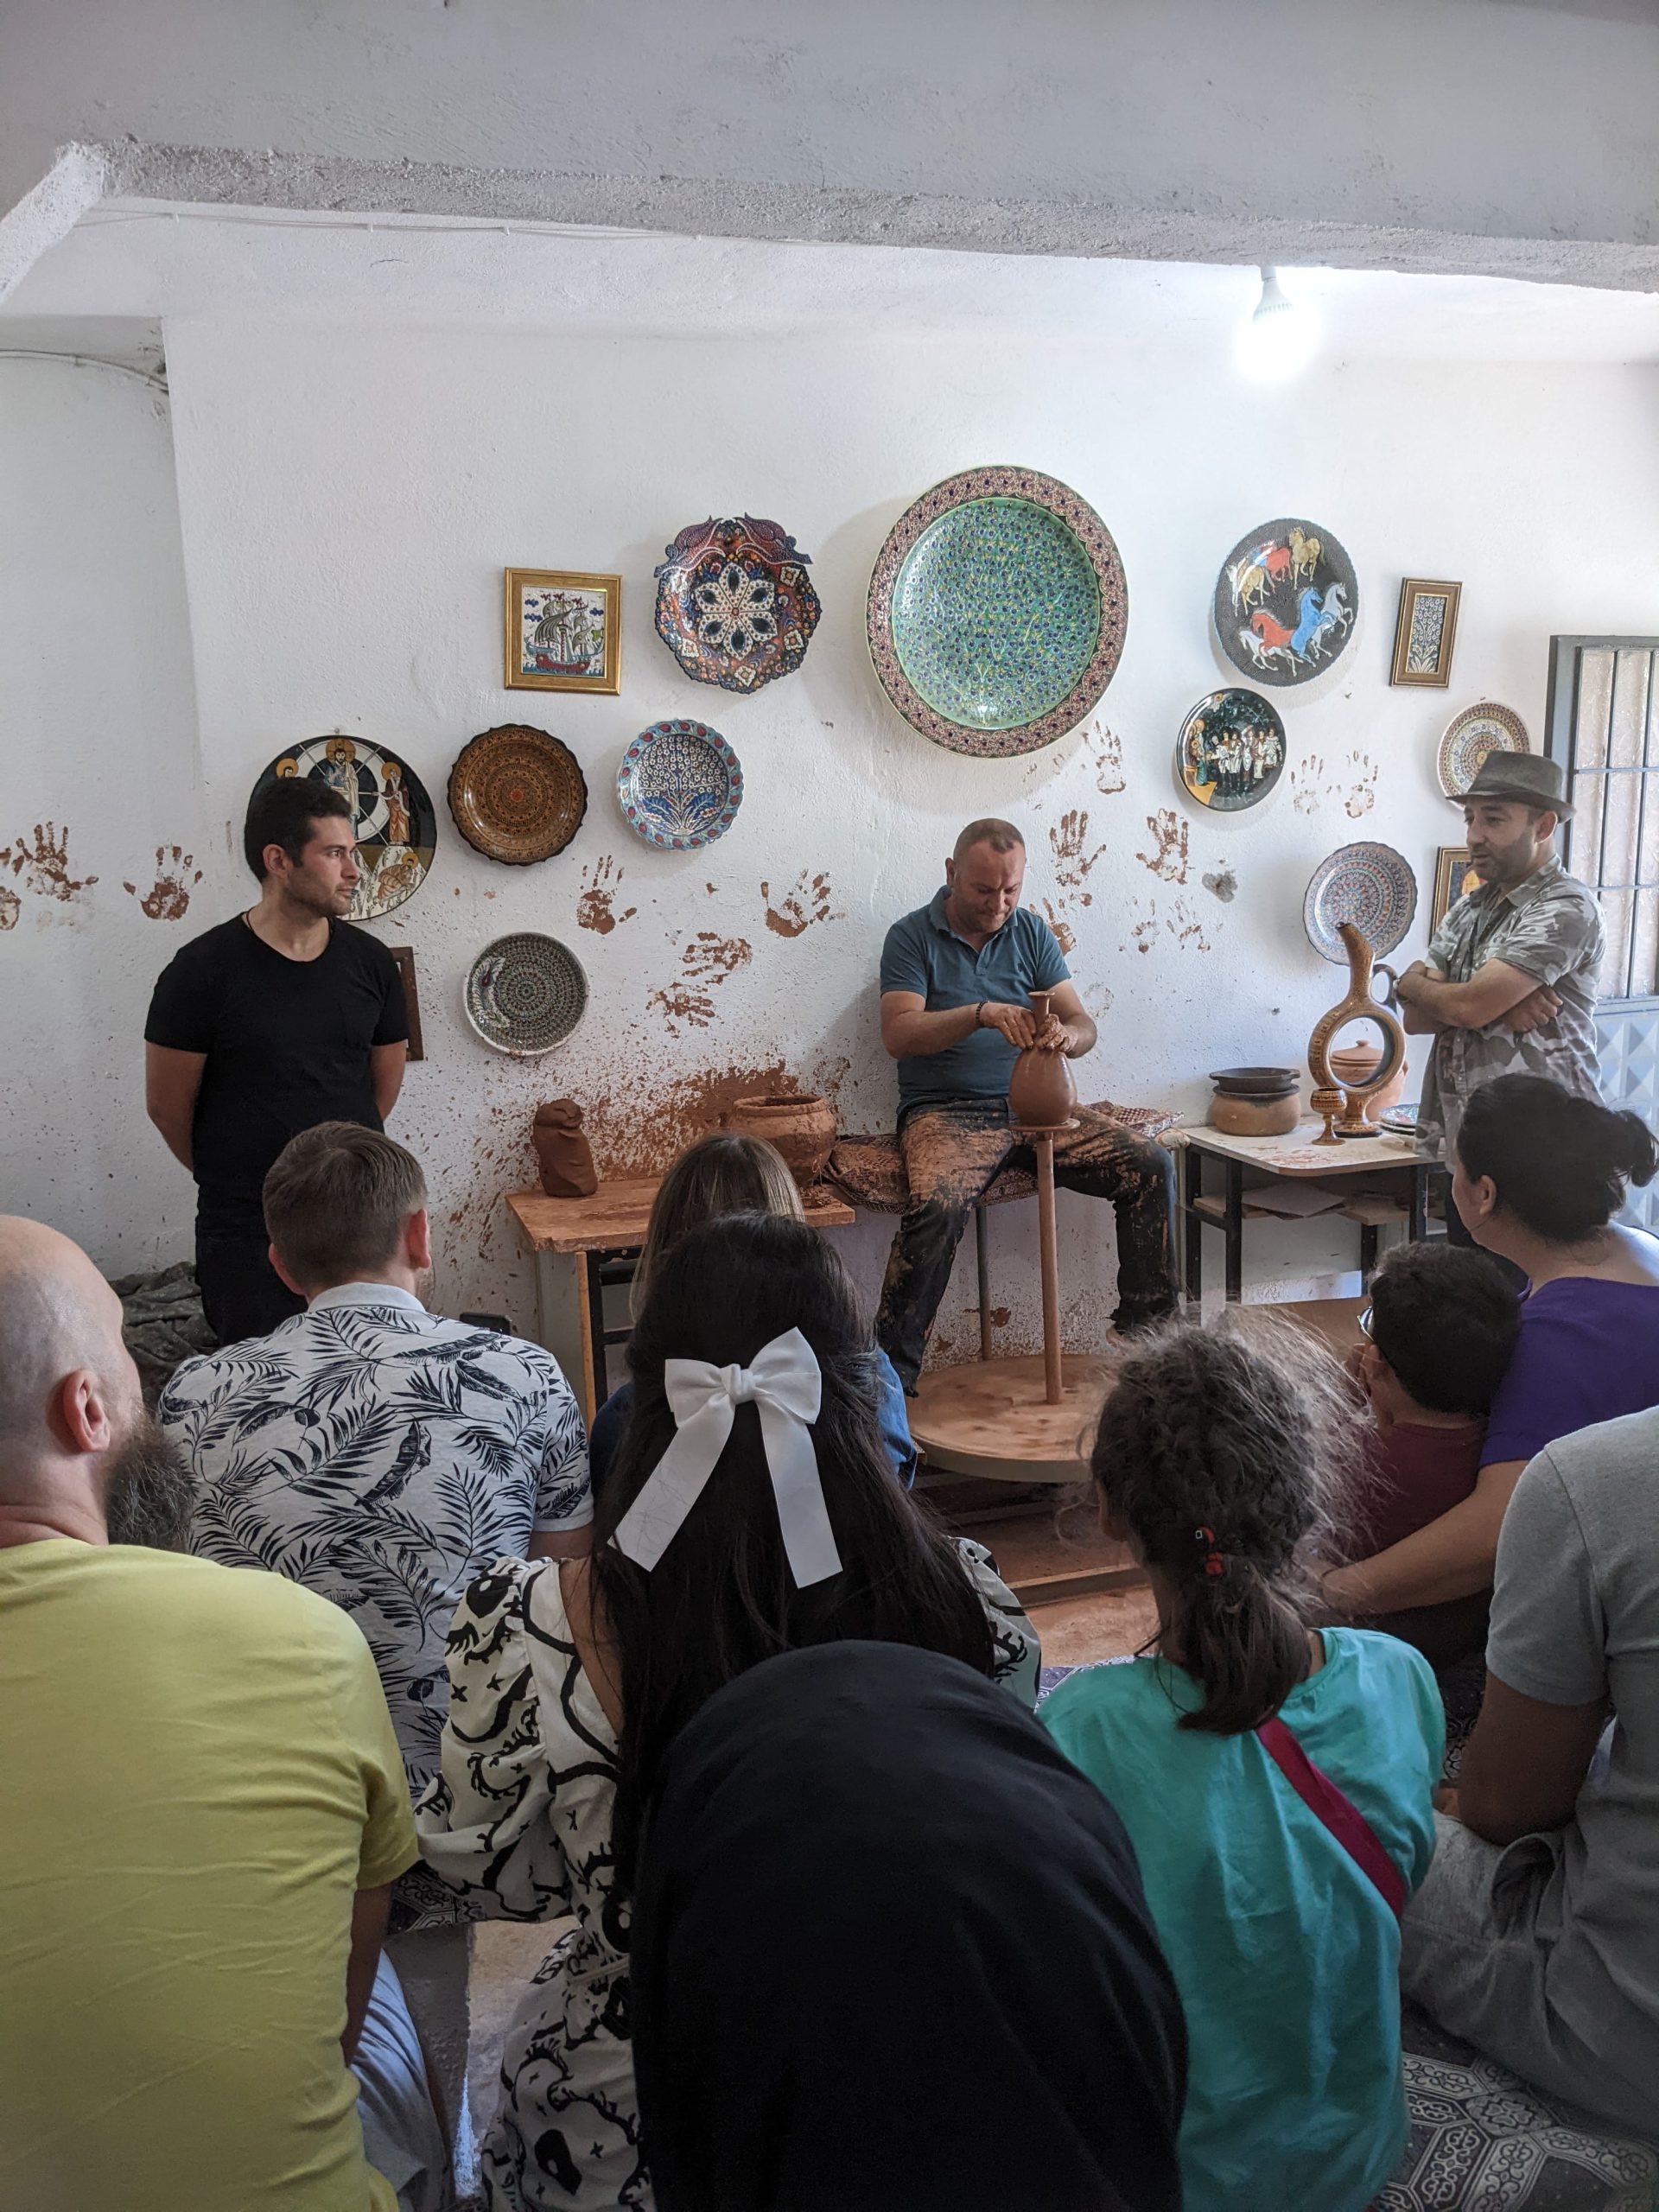 Chlap vysvetľuje publikum ako sa vyrábajú vázy na hrnčiarskom kruhu. Za ním je vidno tureckú keramiku.